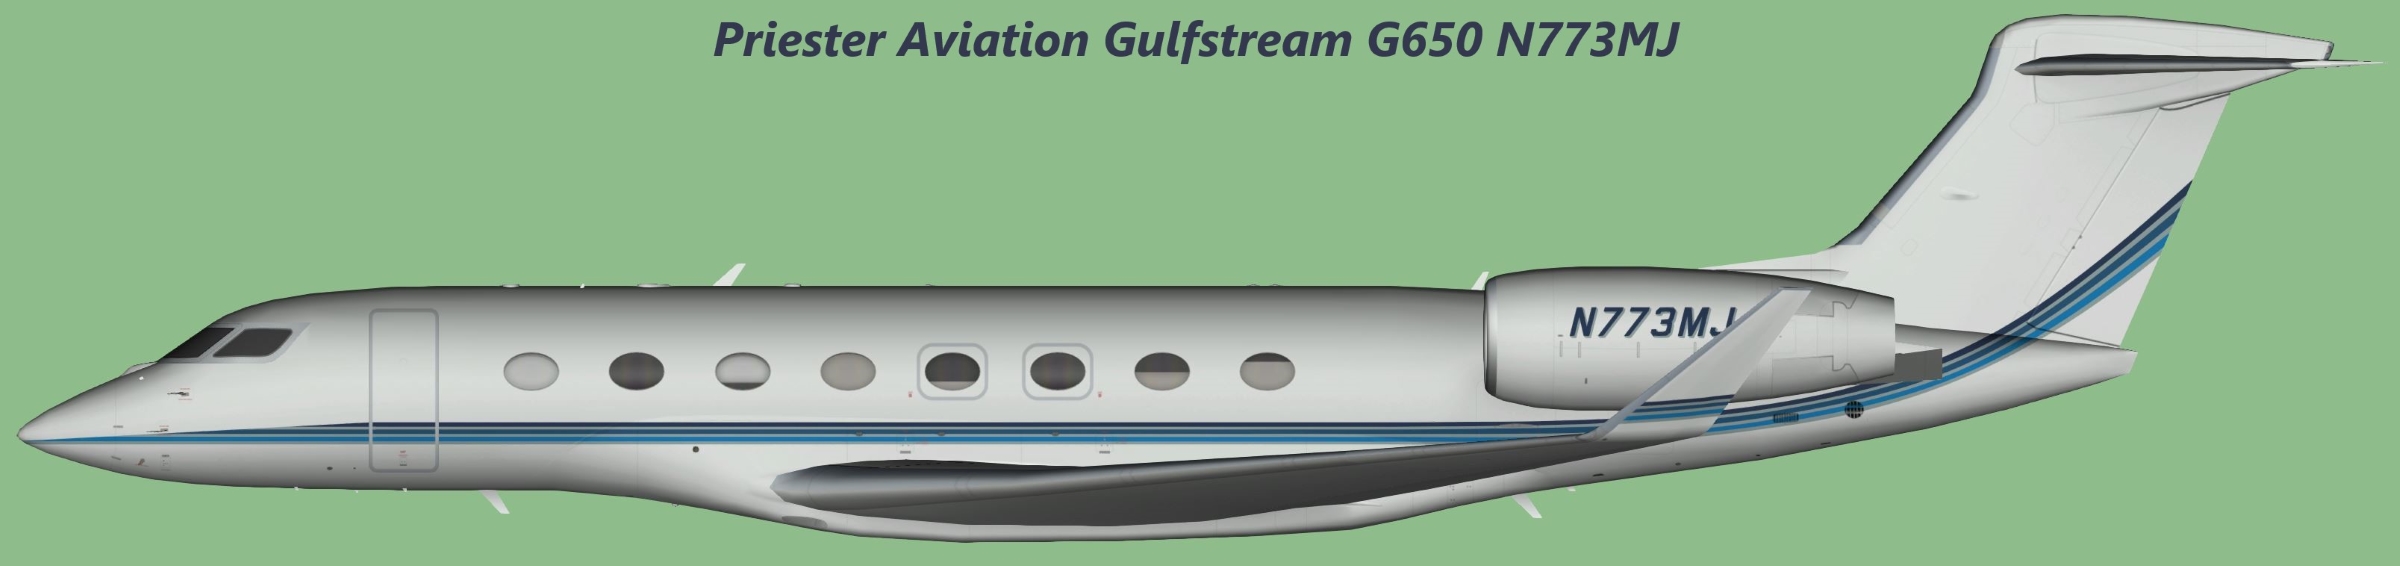 Priester Aviation Gulfstream G650